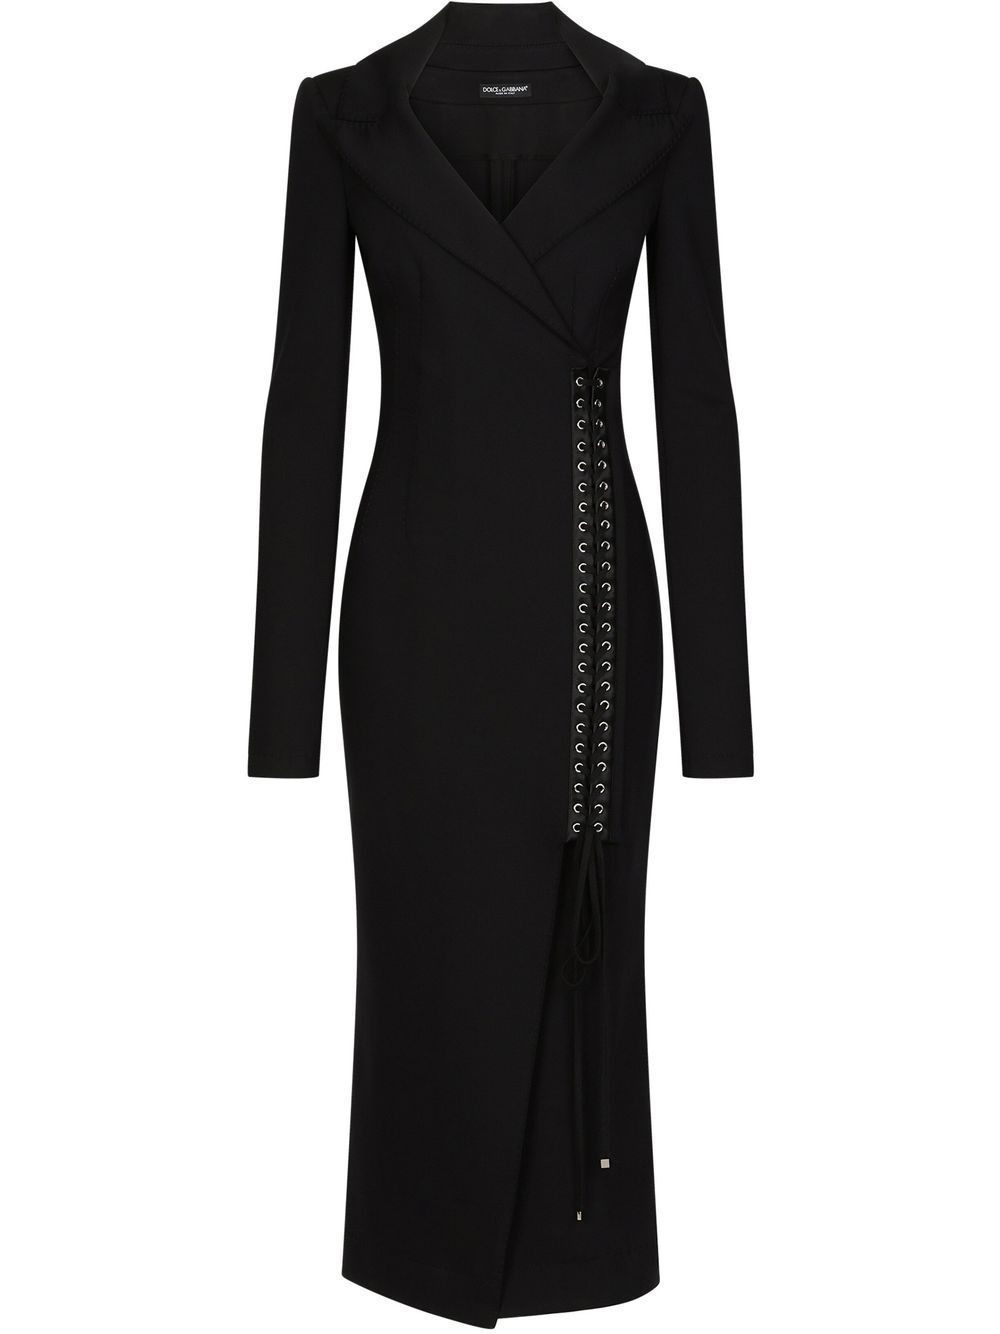 Dolce & Gabbana lace-up detail blazer dress - Schwarz von Dolce & Gabbana